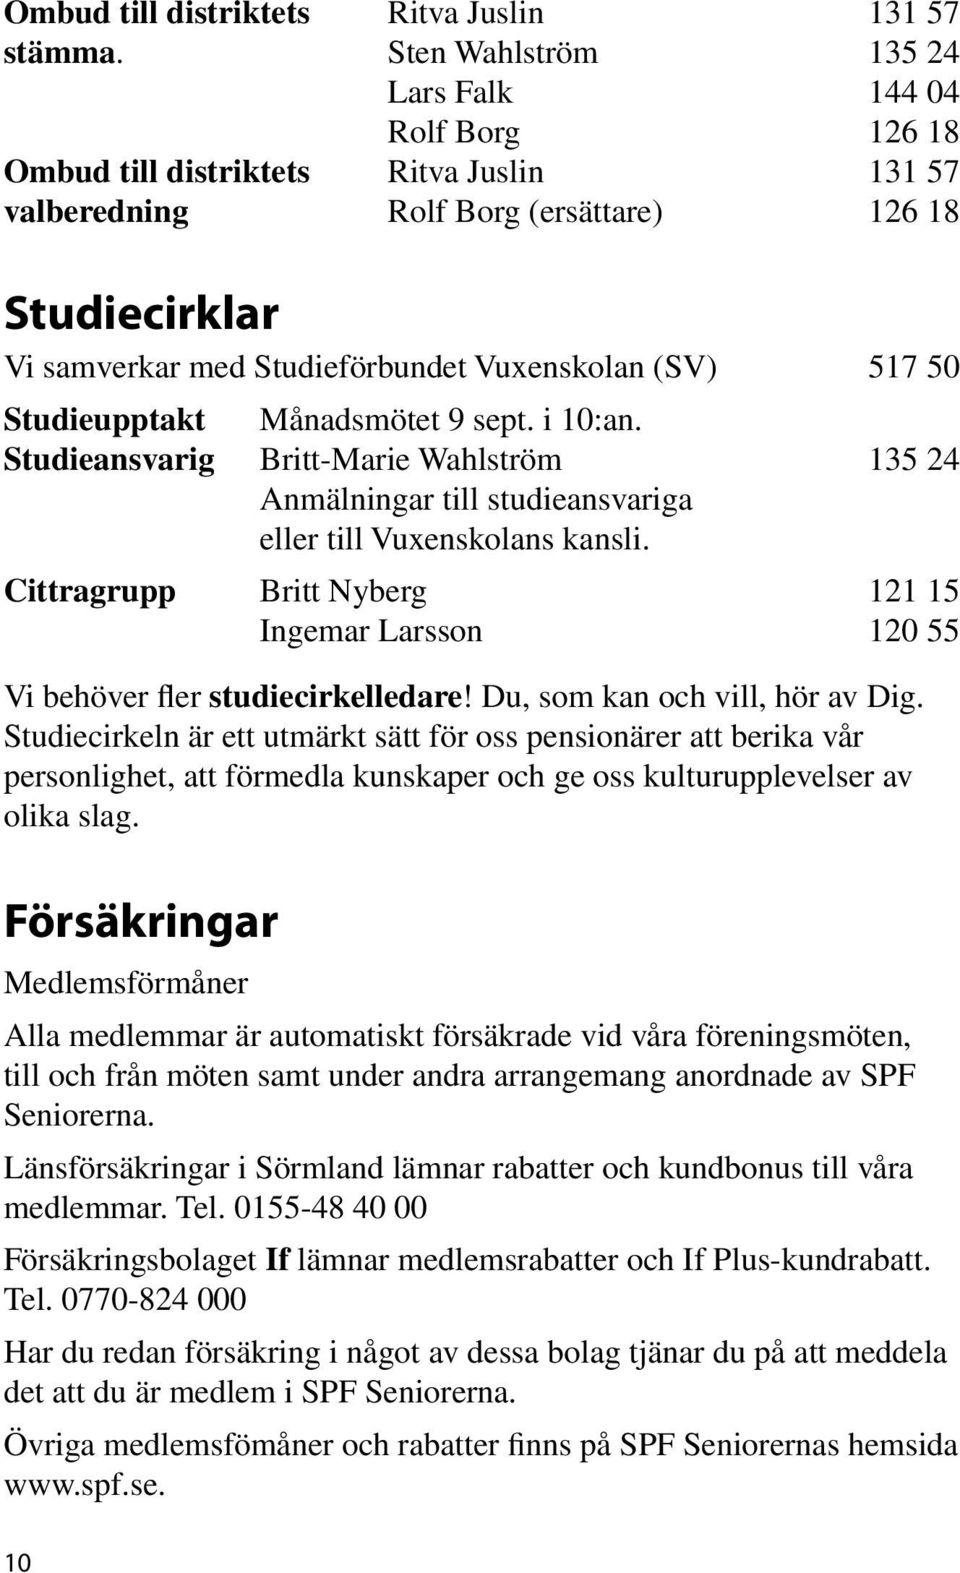 (SV) 517 50 Studieupptakt Månadsmötet 9 sept. i 10:an. Studieansvarig Britt-Marie Wahlström 135 24 Anmälningar till studieansvariga eller till Vuxenskolans kansli.